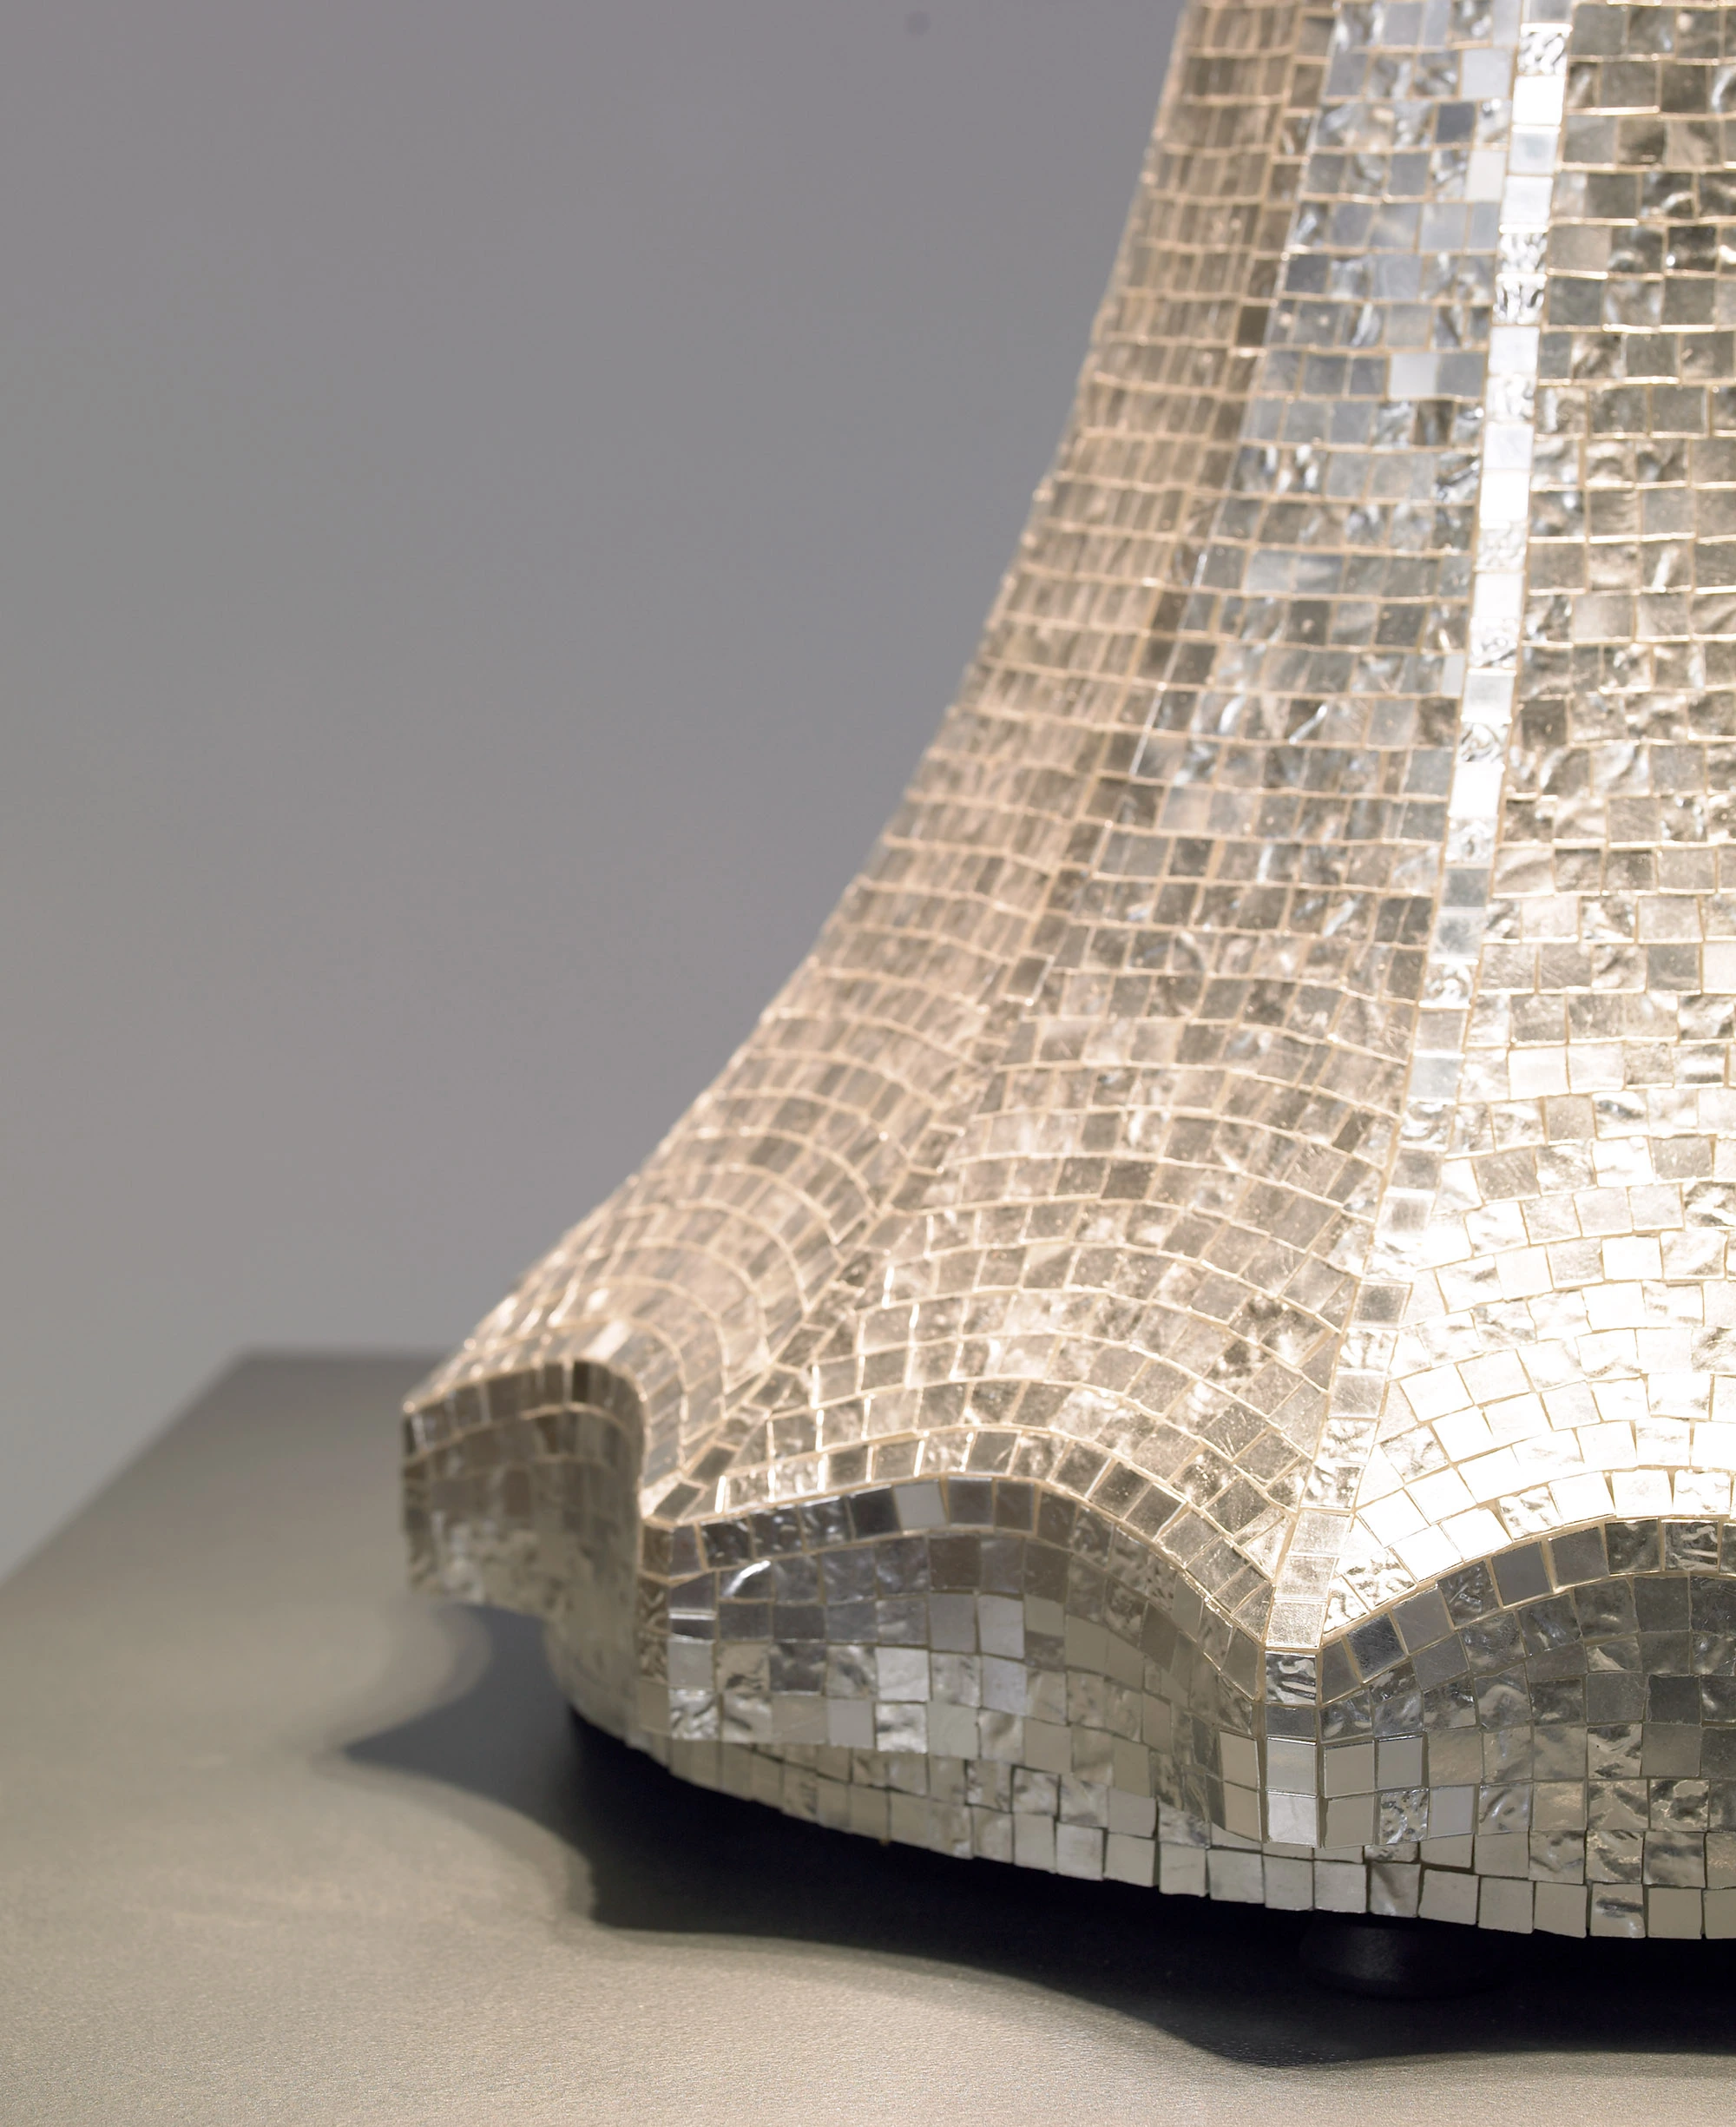 Lampada white gold - Alessandro Mendini - Floor light - Galerie kreo